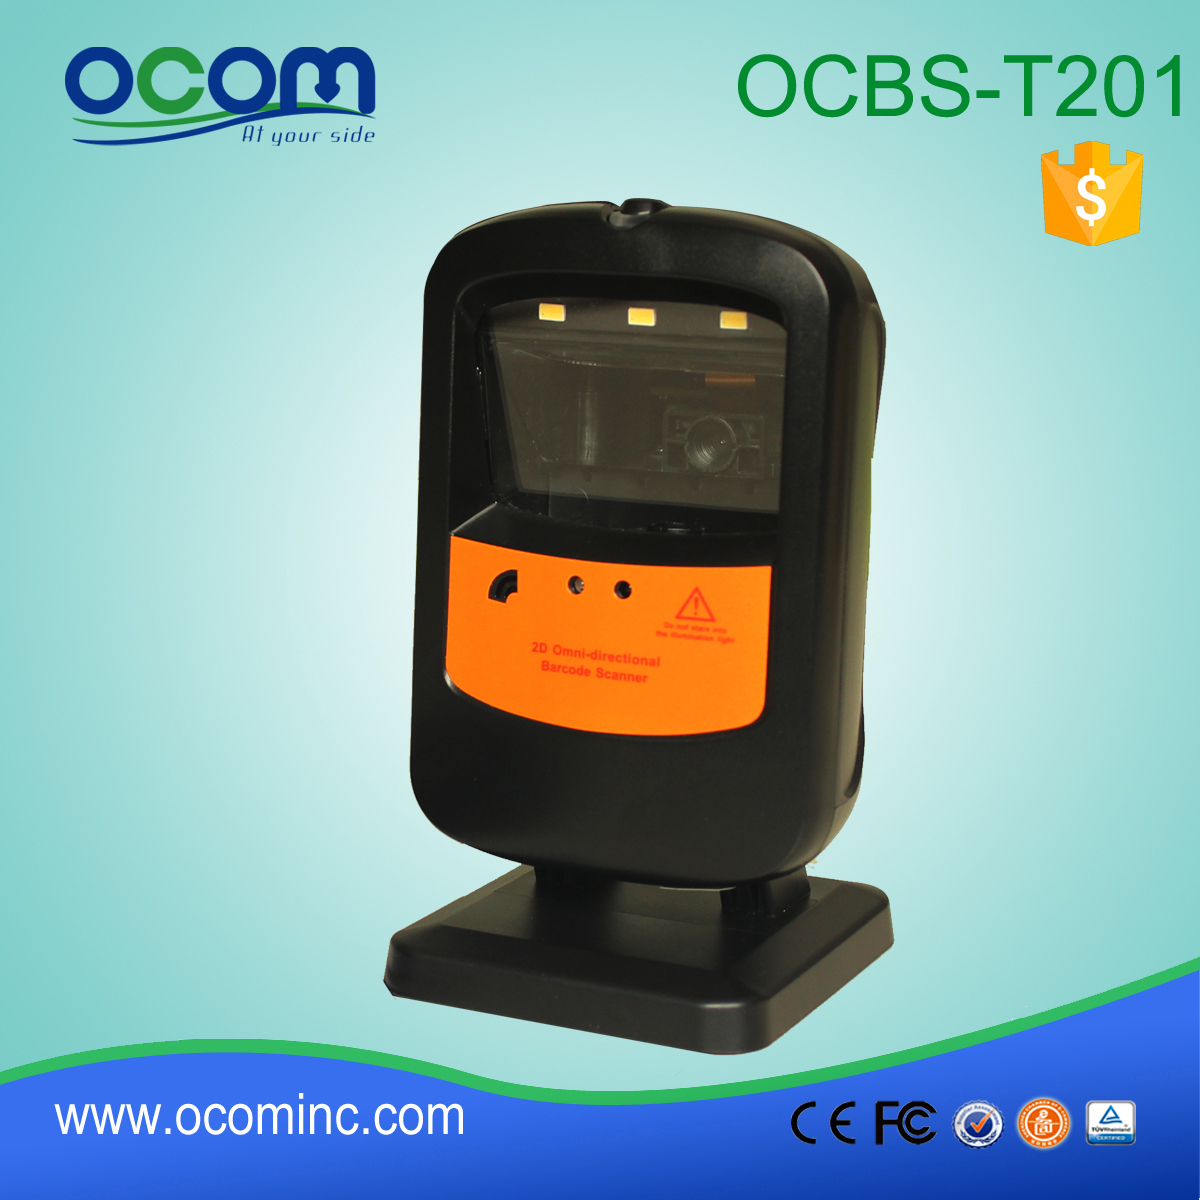 OCBS-T201: proveedores de escáner de código de barras omnidireccionales, el módulo lector de barras